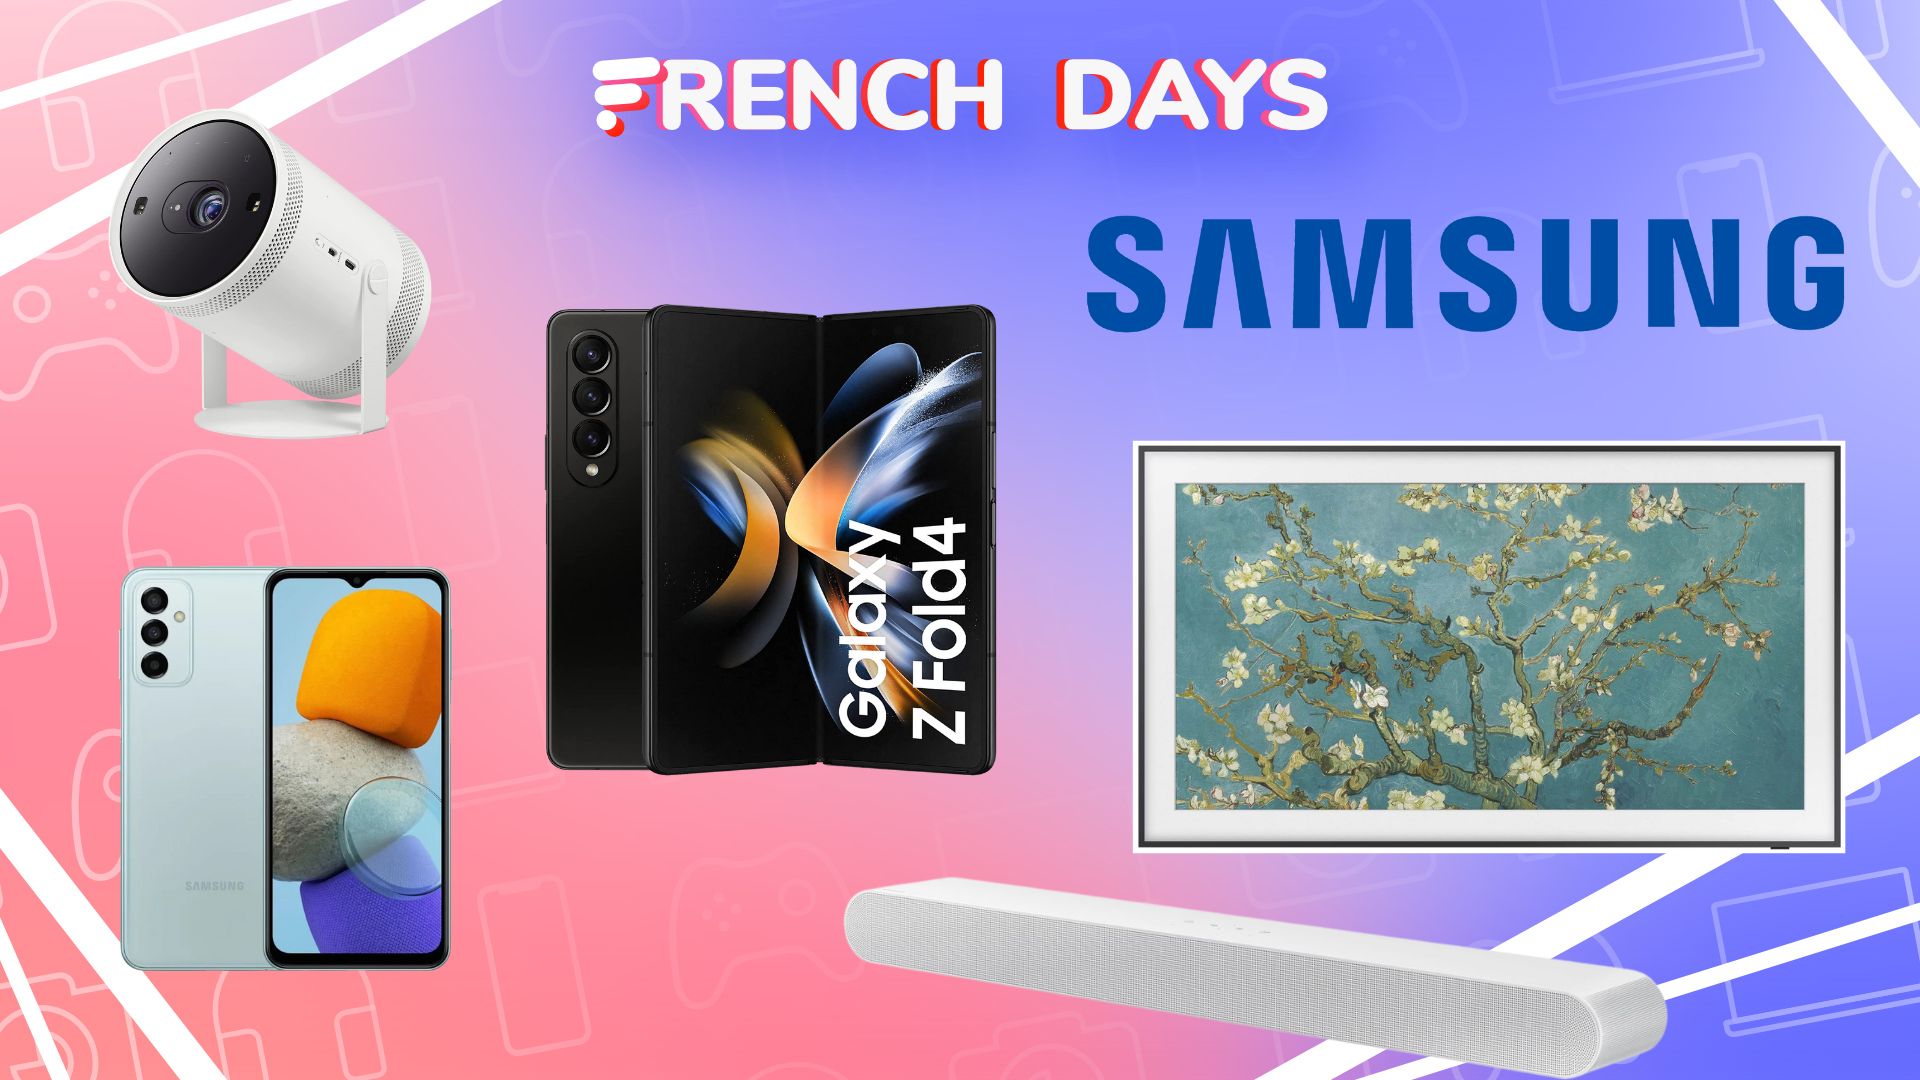 French Days : jusqu'à -280 € sur le SSD externe baroudeur Samsung